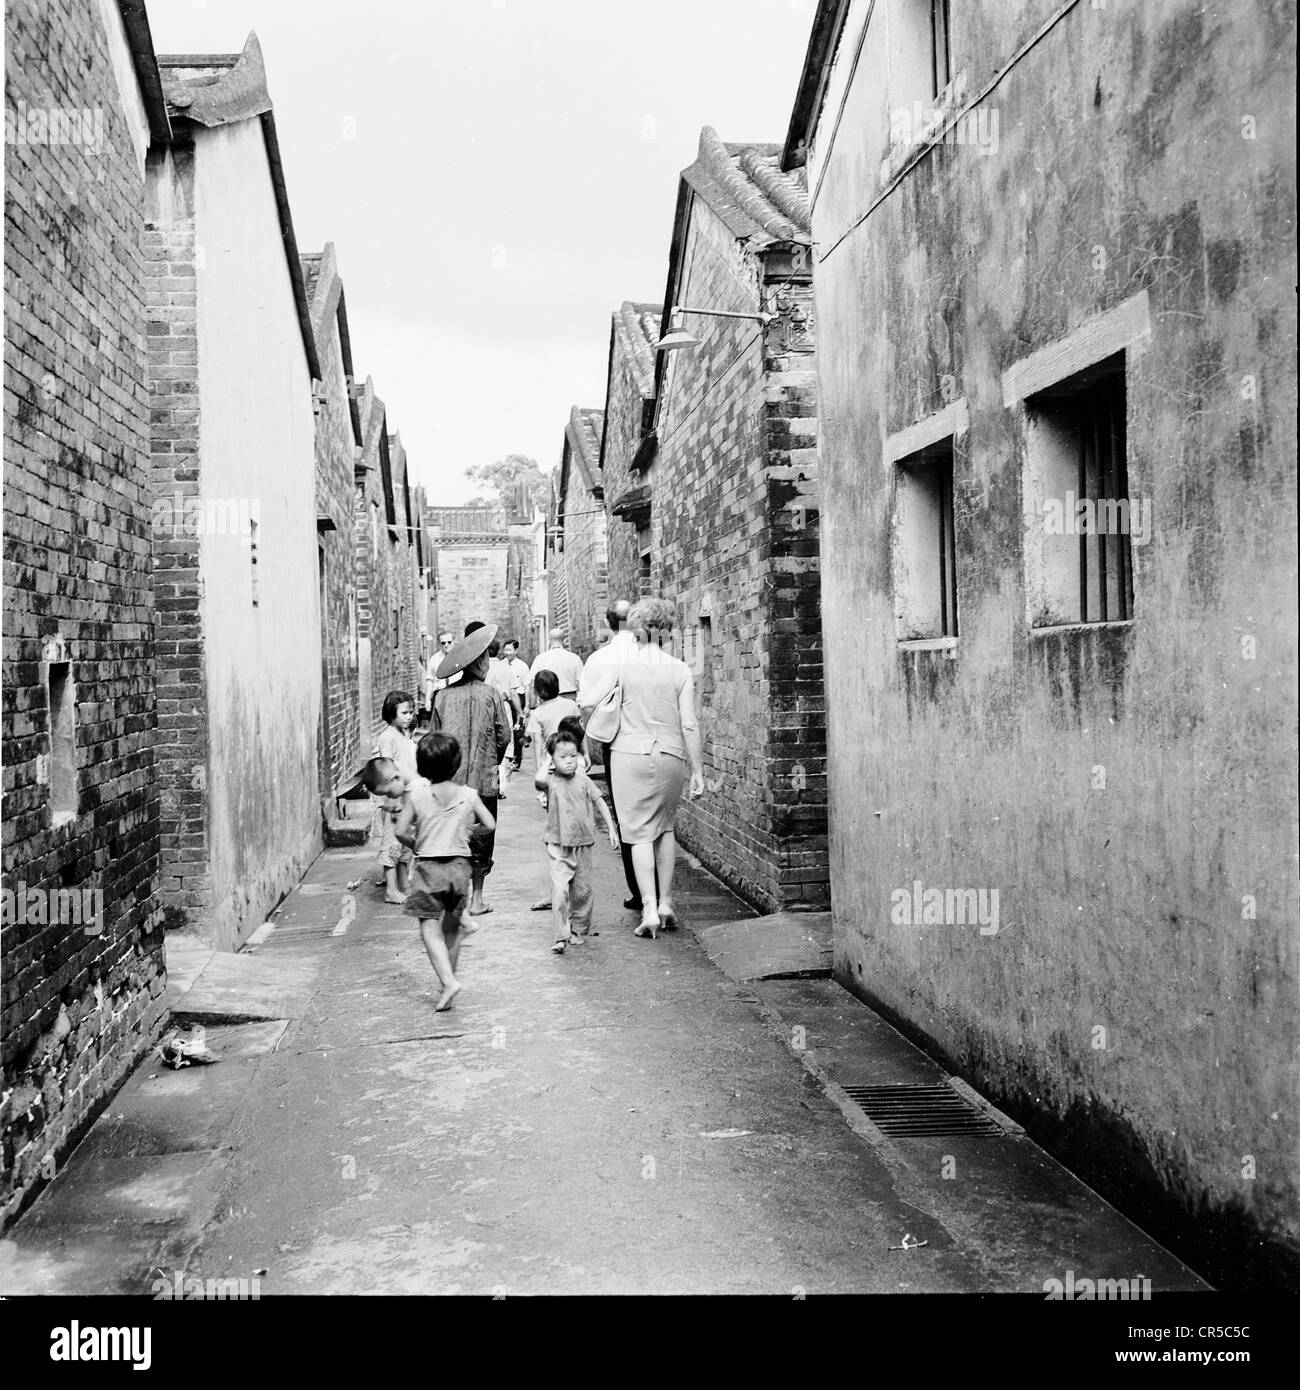 Geschichtsbild aus Hong Kong, 1950er Jahre. Ein westliches paar gehen die hinteren Straßen gefolgt von lokalen chinesischen Kinder. Stockfoto